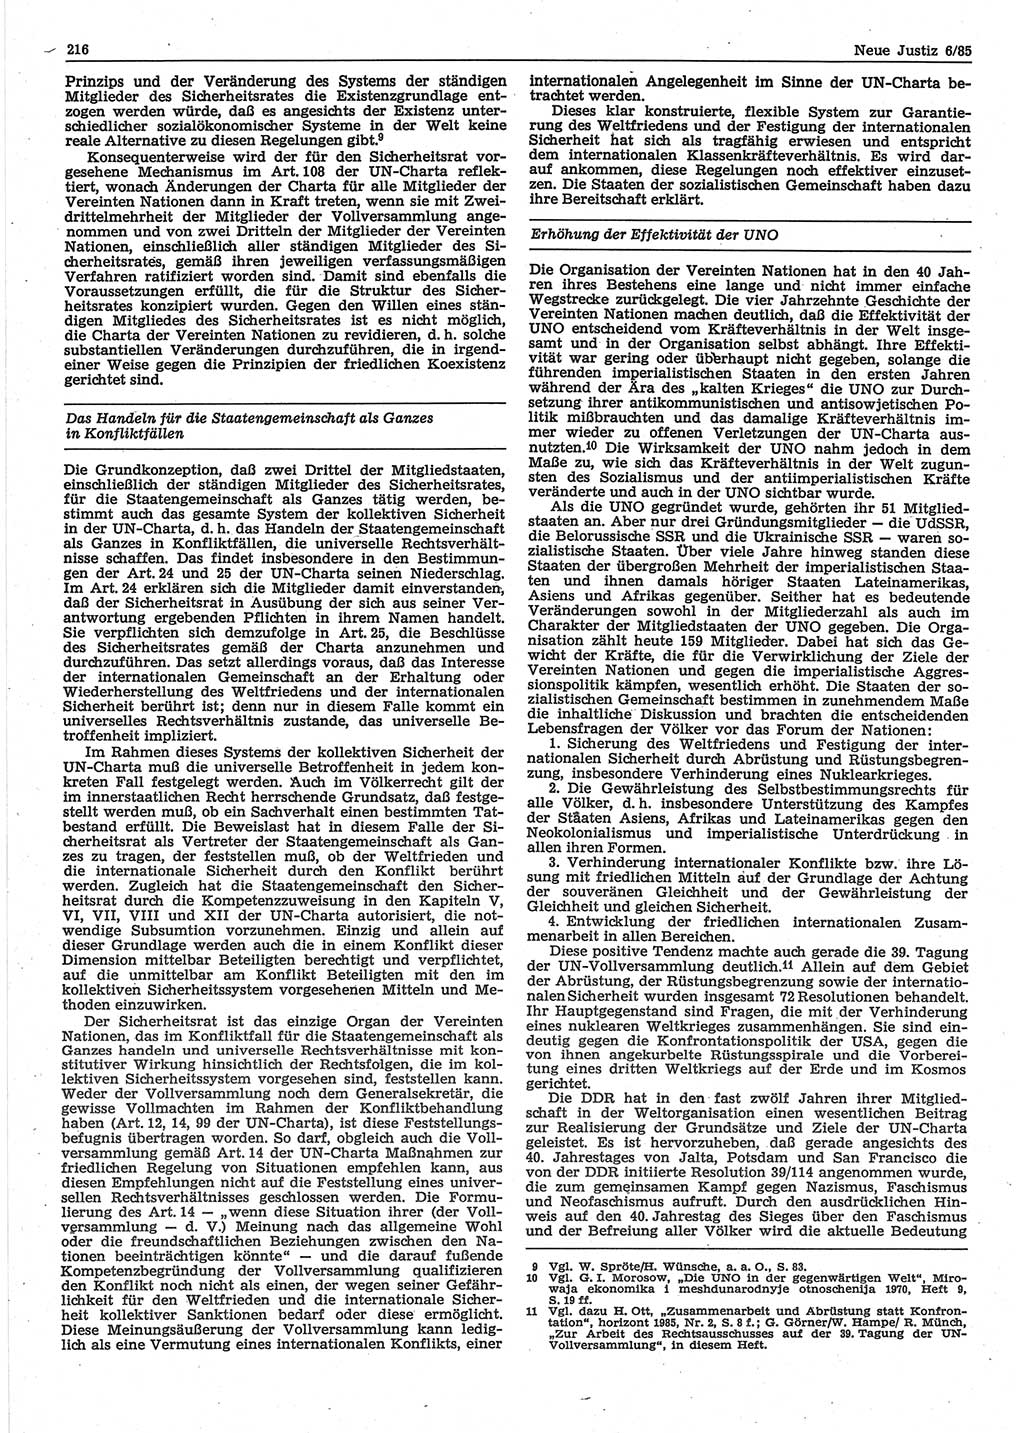 Neue Justiz (NJ), Zeitschrift für sozialistisches Recht und Gesetzlichkeit [Deutsche Demokratische Republik (DDR)], 39. Jahrgang 1985, Seite 216 (NJ DDR 1985, S. 216)